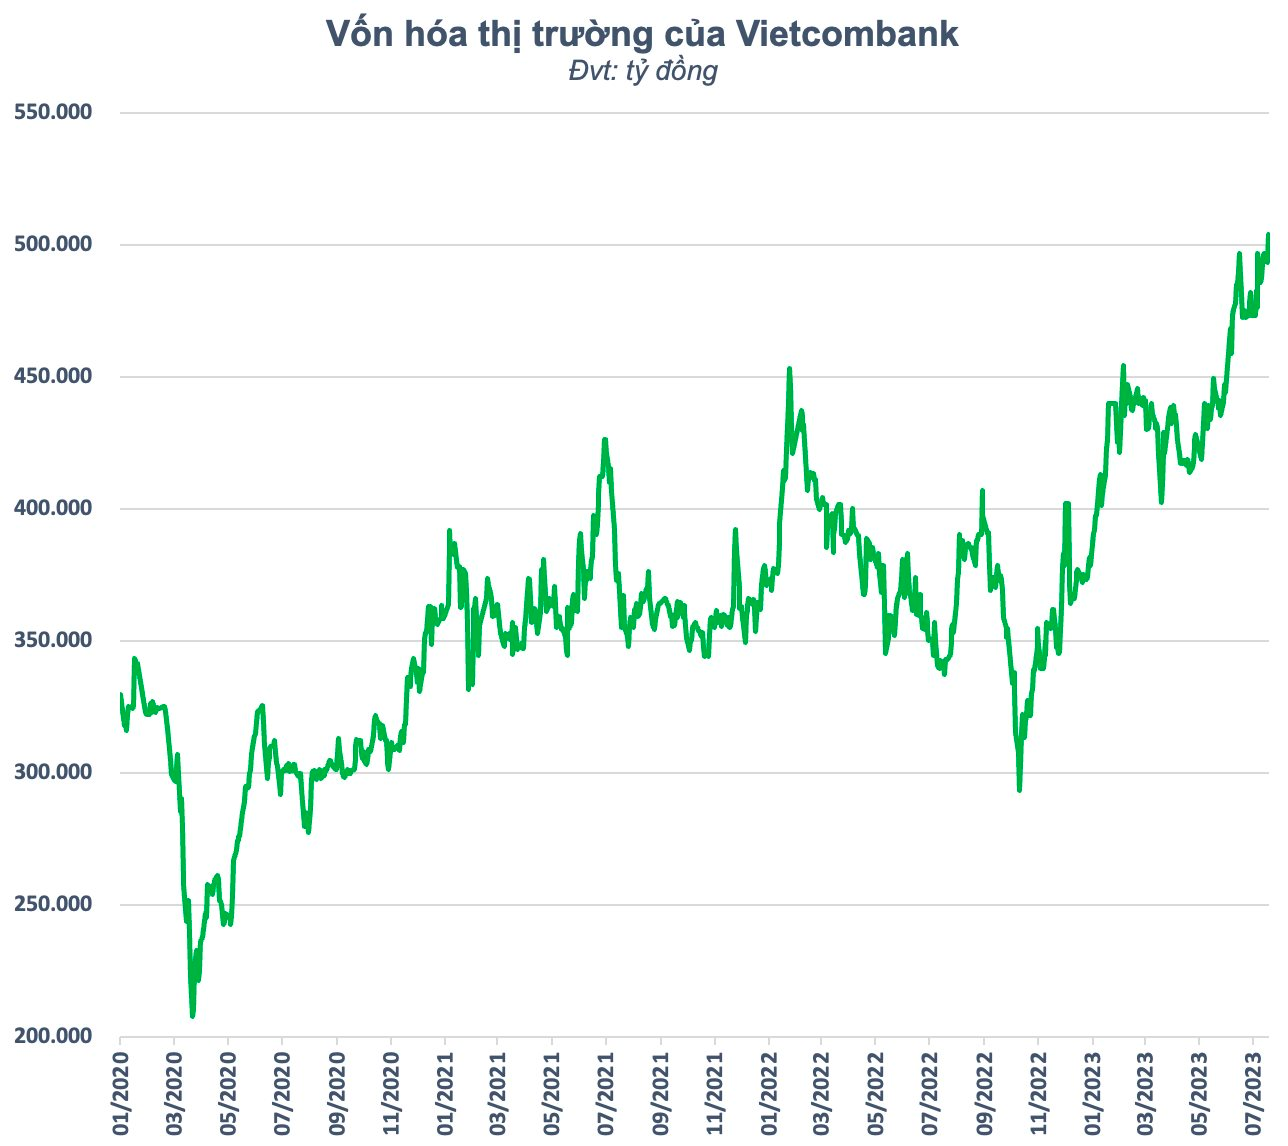 Vietcombank trở thành cổ phiếu đầu tiên vượt ngưỡng nửa triệu tỷ vốn hóa trong lịch sử chứng khoán Việt Nam - Ảnh 2.